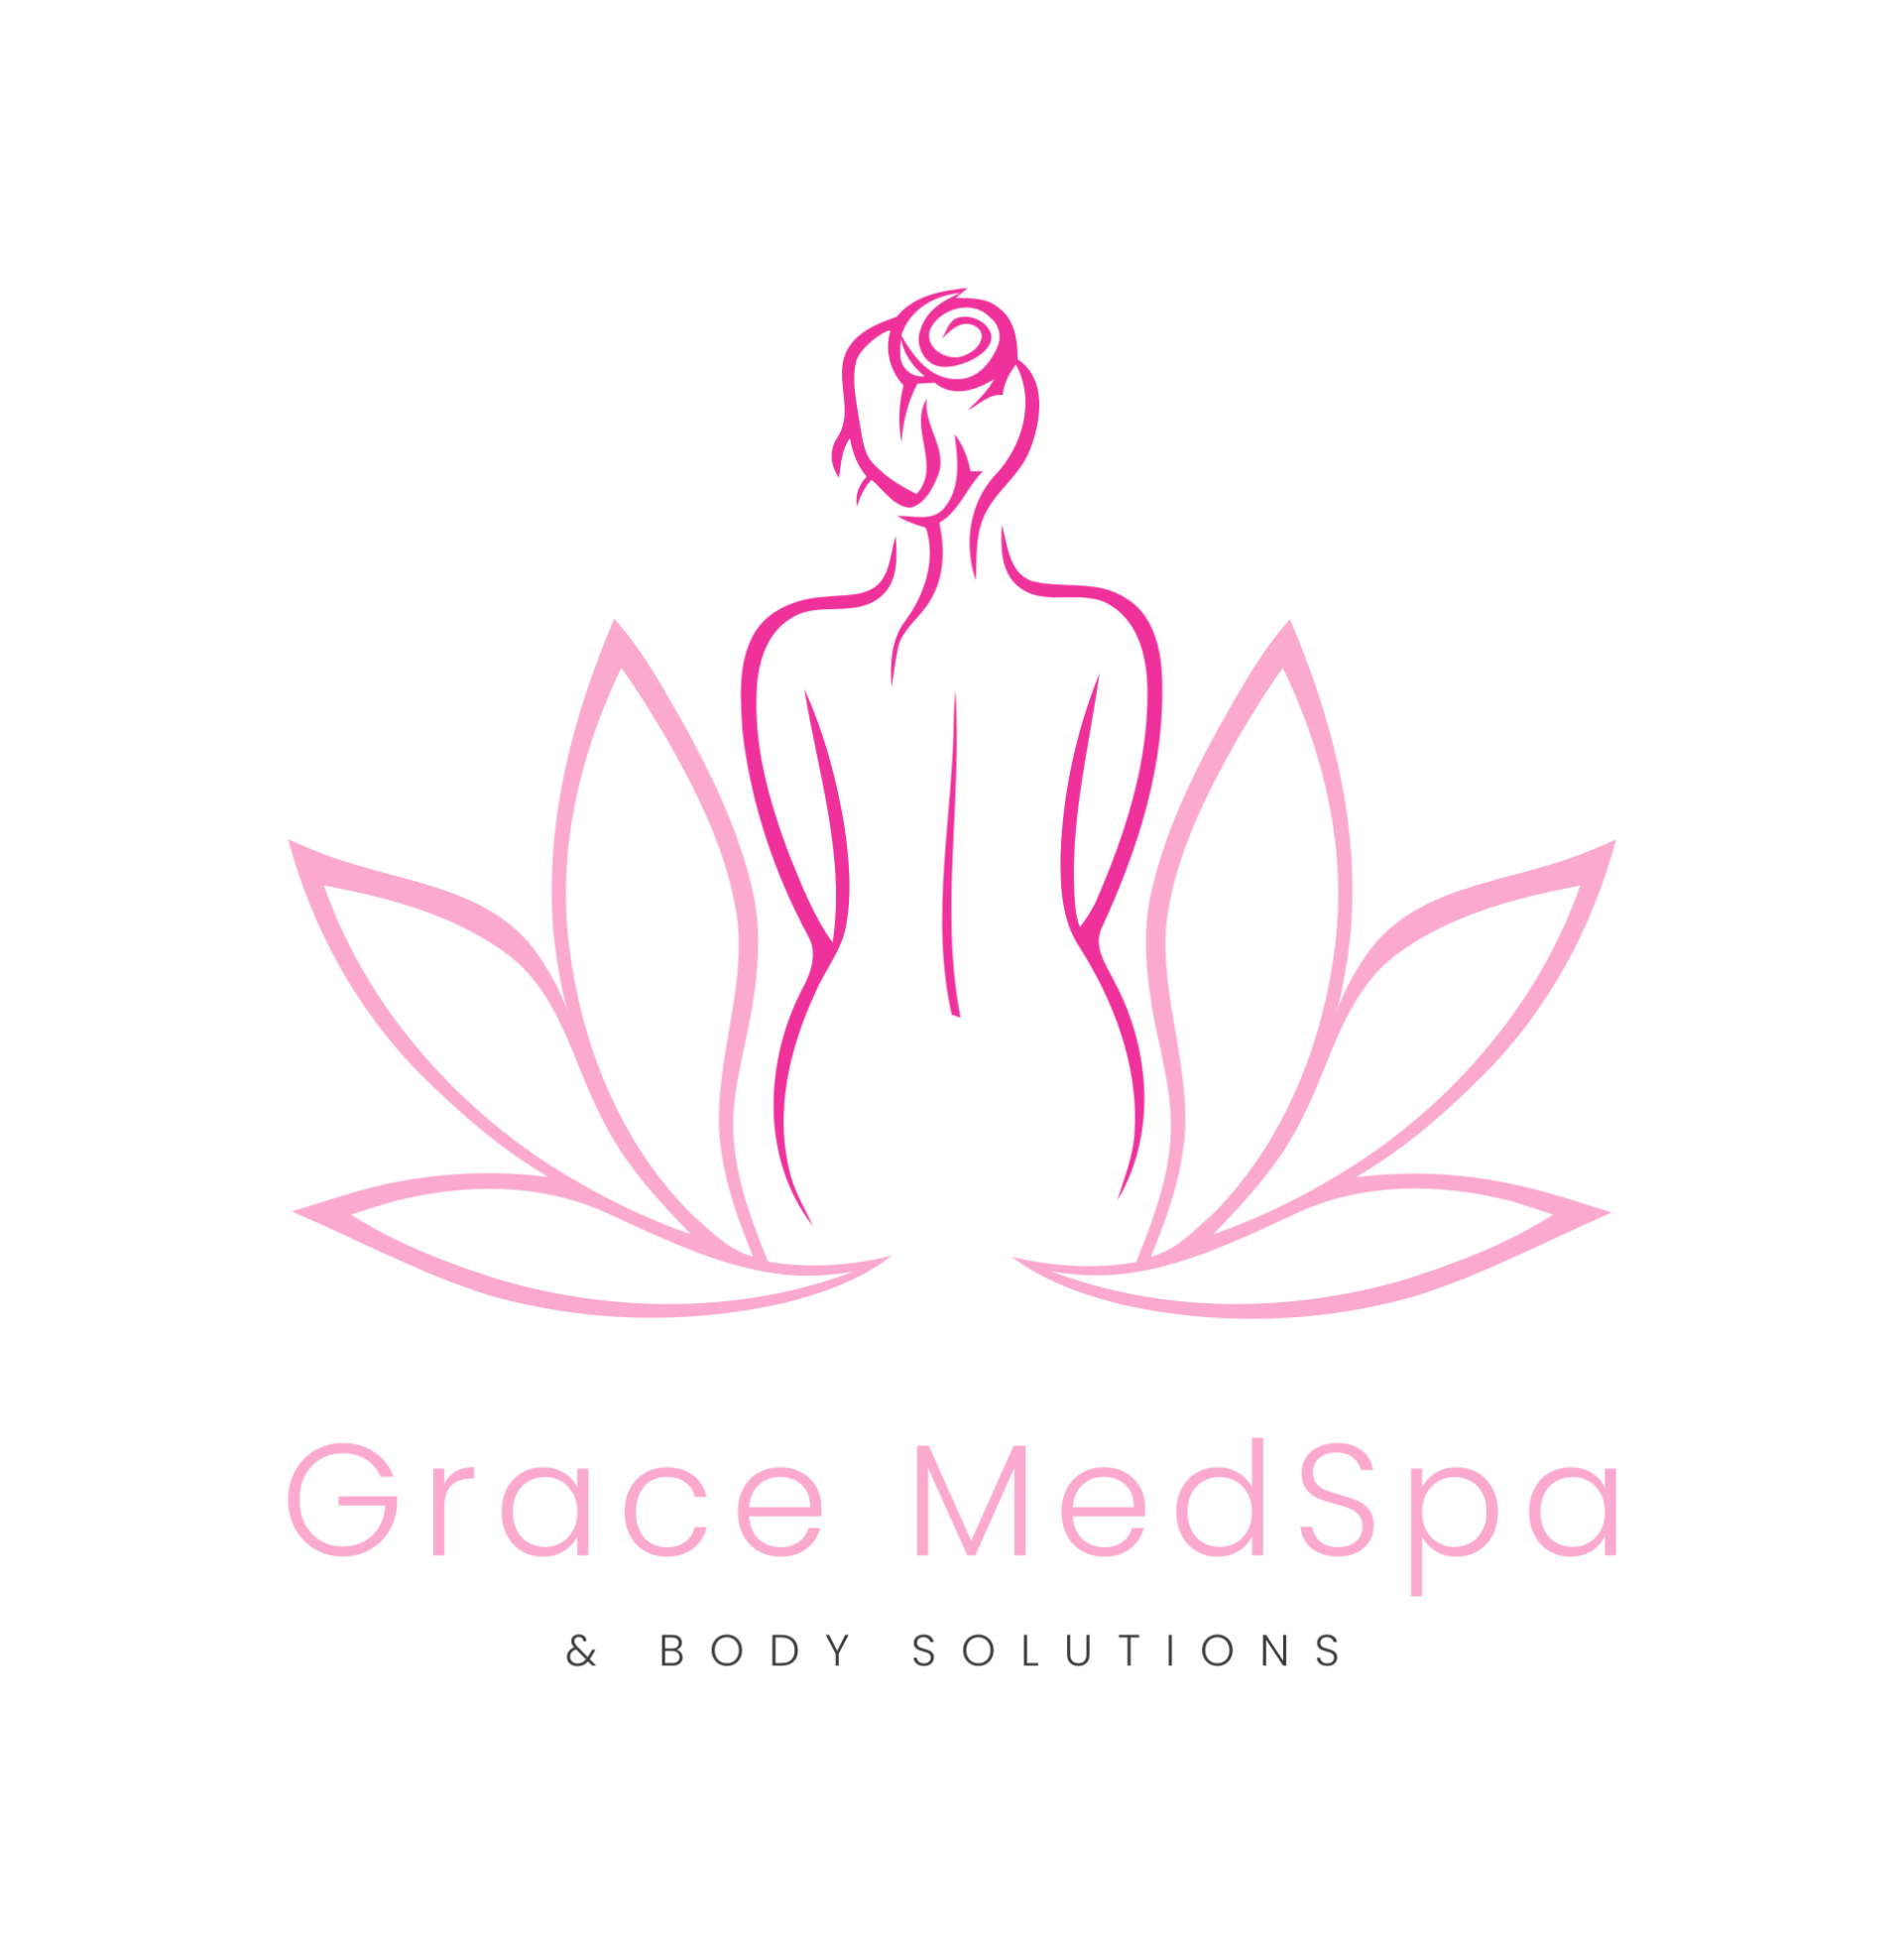 Grace MedSpa & Body Solutions Business Logo